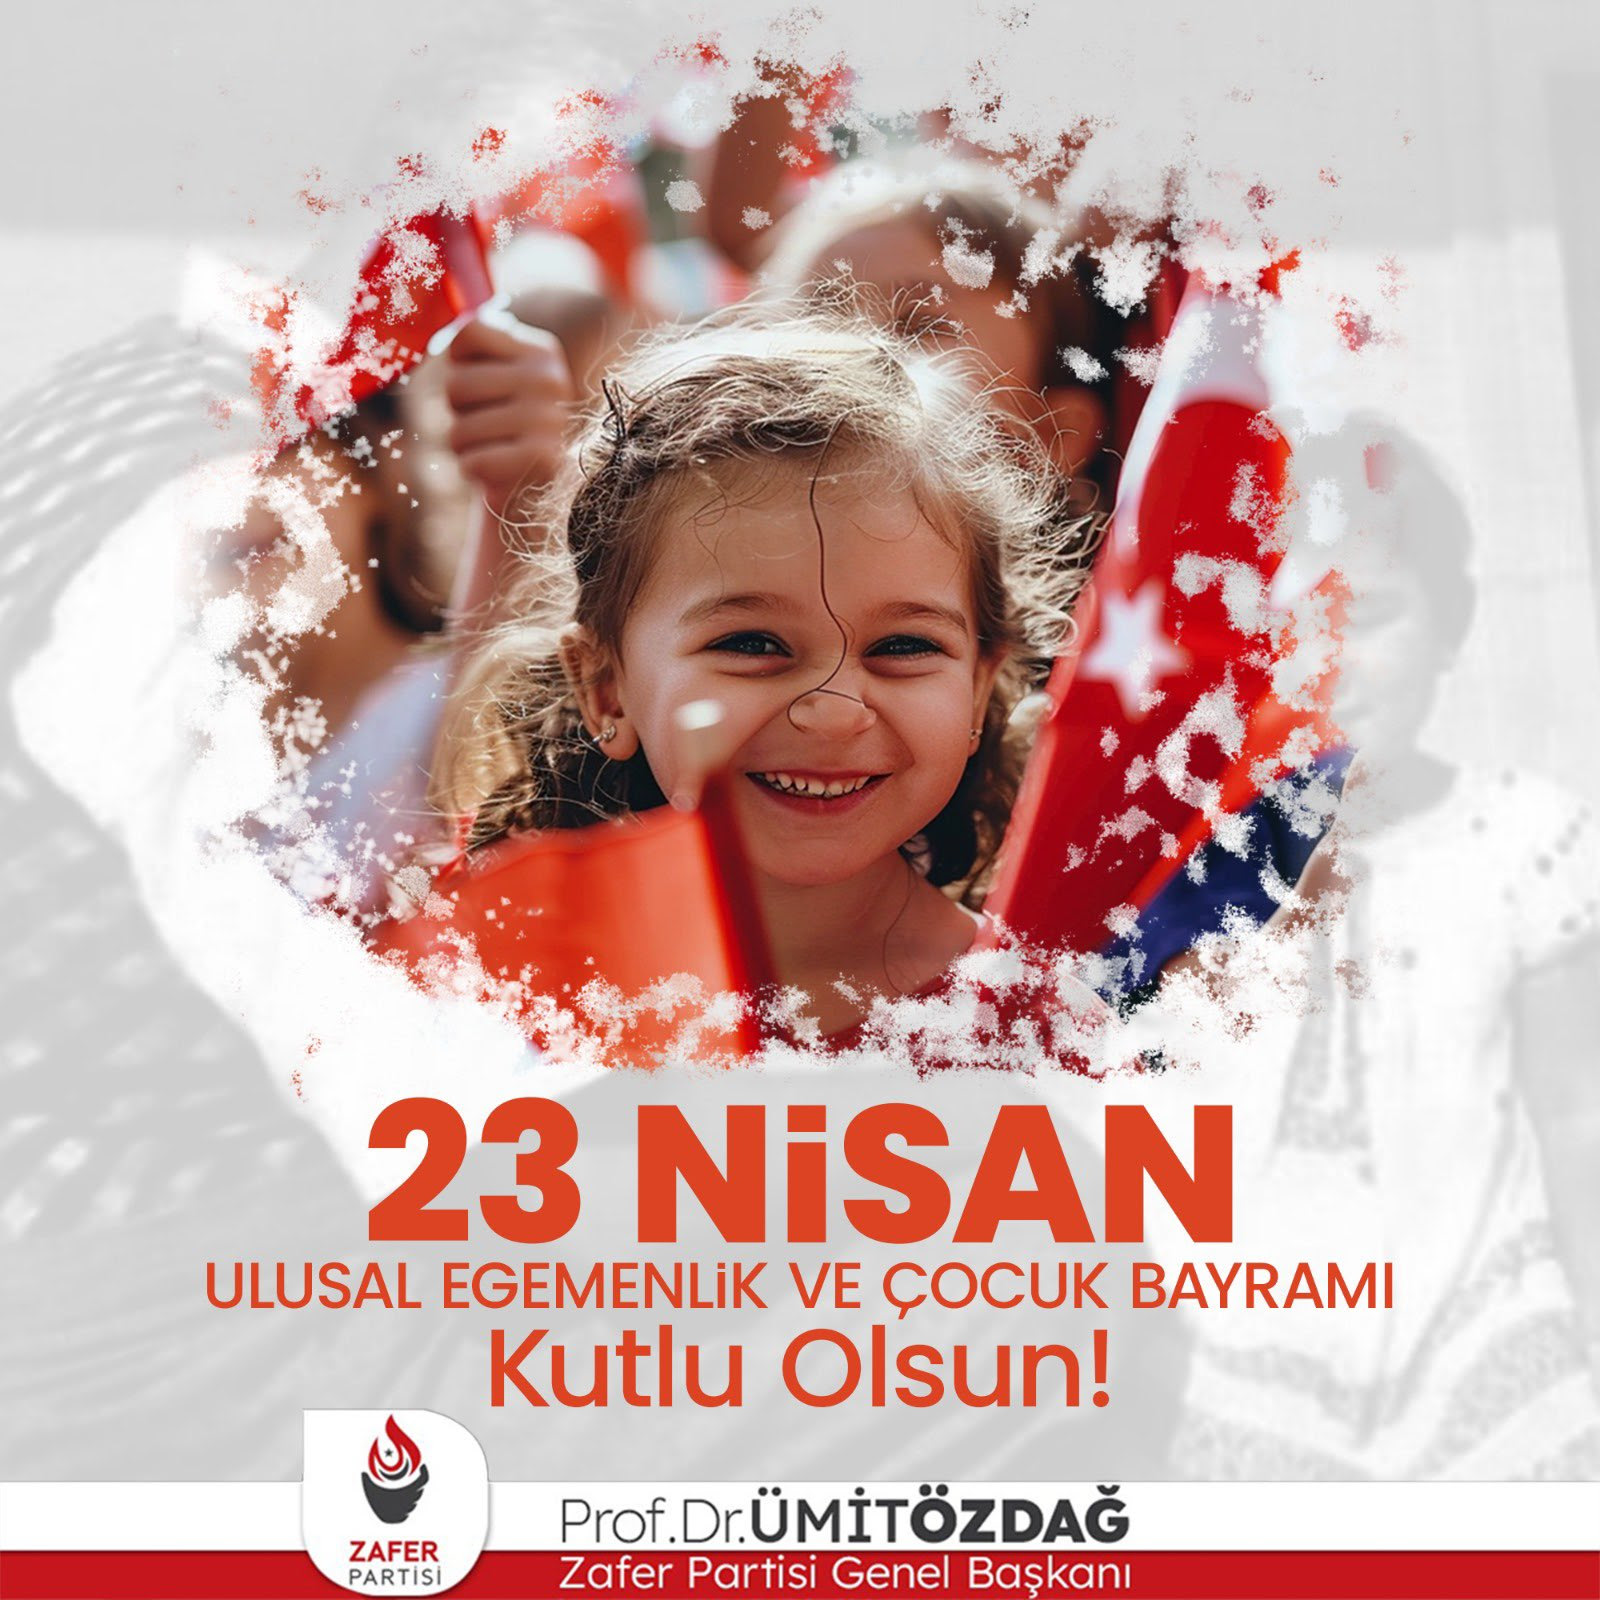 Zafer Partisi Genel Başkanı Prof. Dr. Ümit Özdağ, 23 Nisan Ulusal Egemenlik ve Çocuk Bayramı’na özel kutlama mesajı yayınladı.